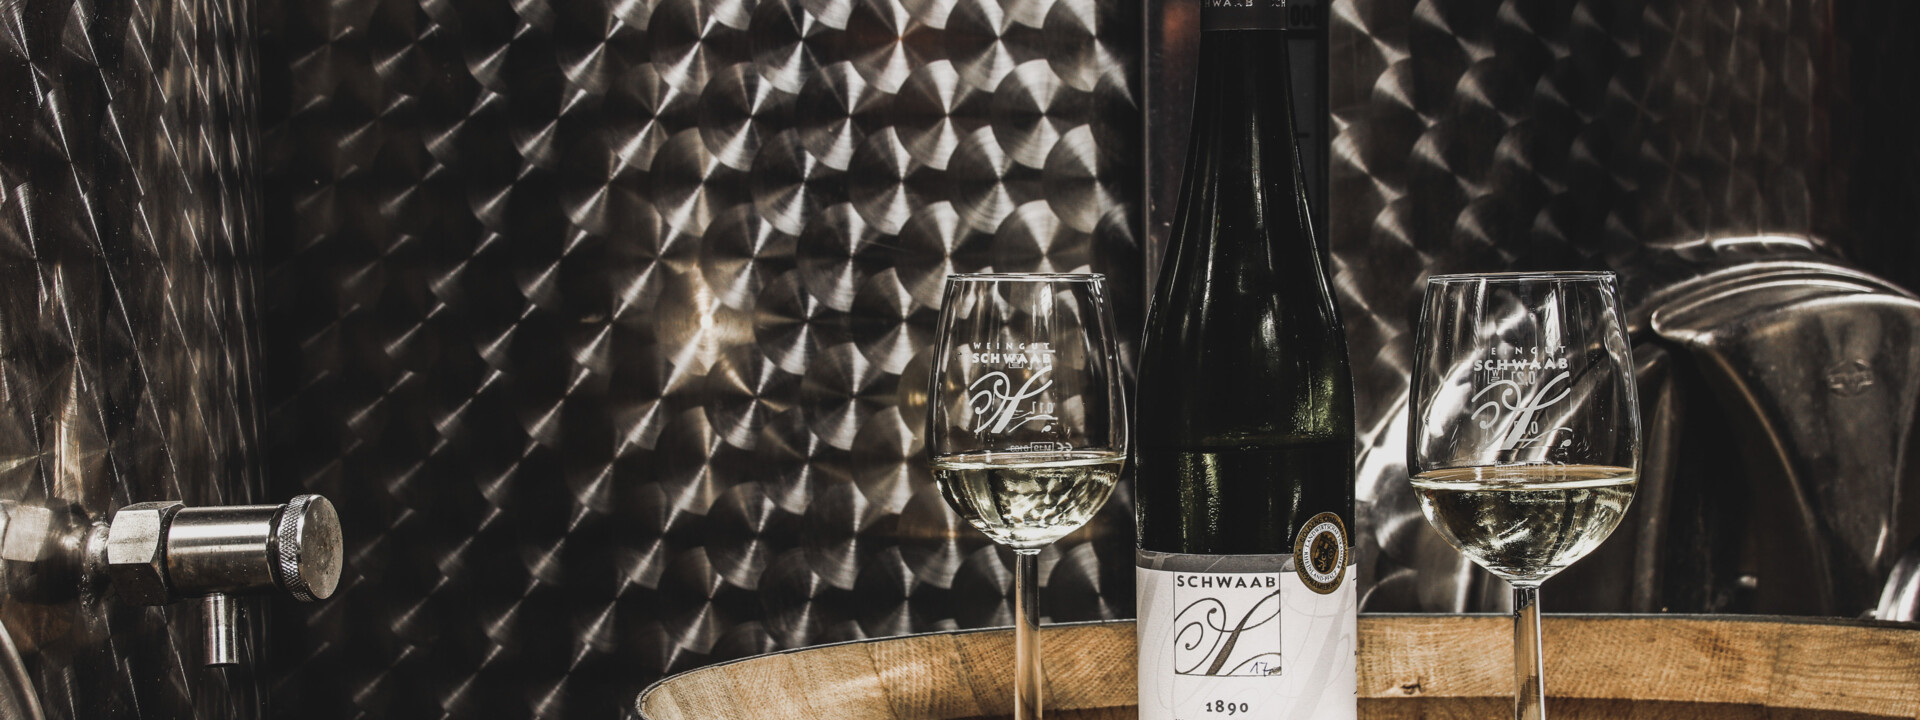 Zwei Weingläser mit Riesling stehen auf einem Fass neben einer Weinflasche ©Koblenz-Touristik GmbH, Johannes Bruchhof